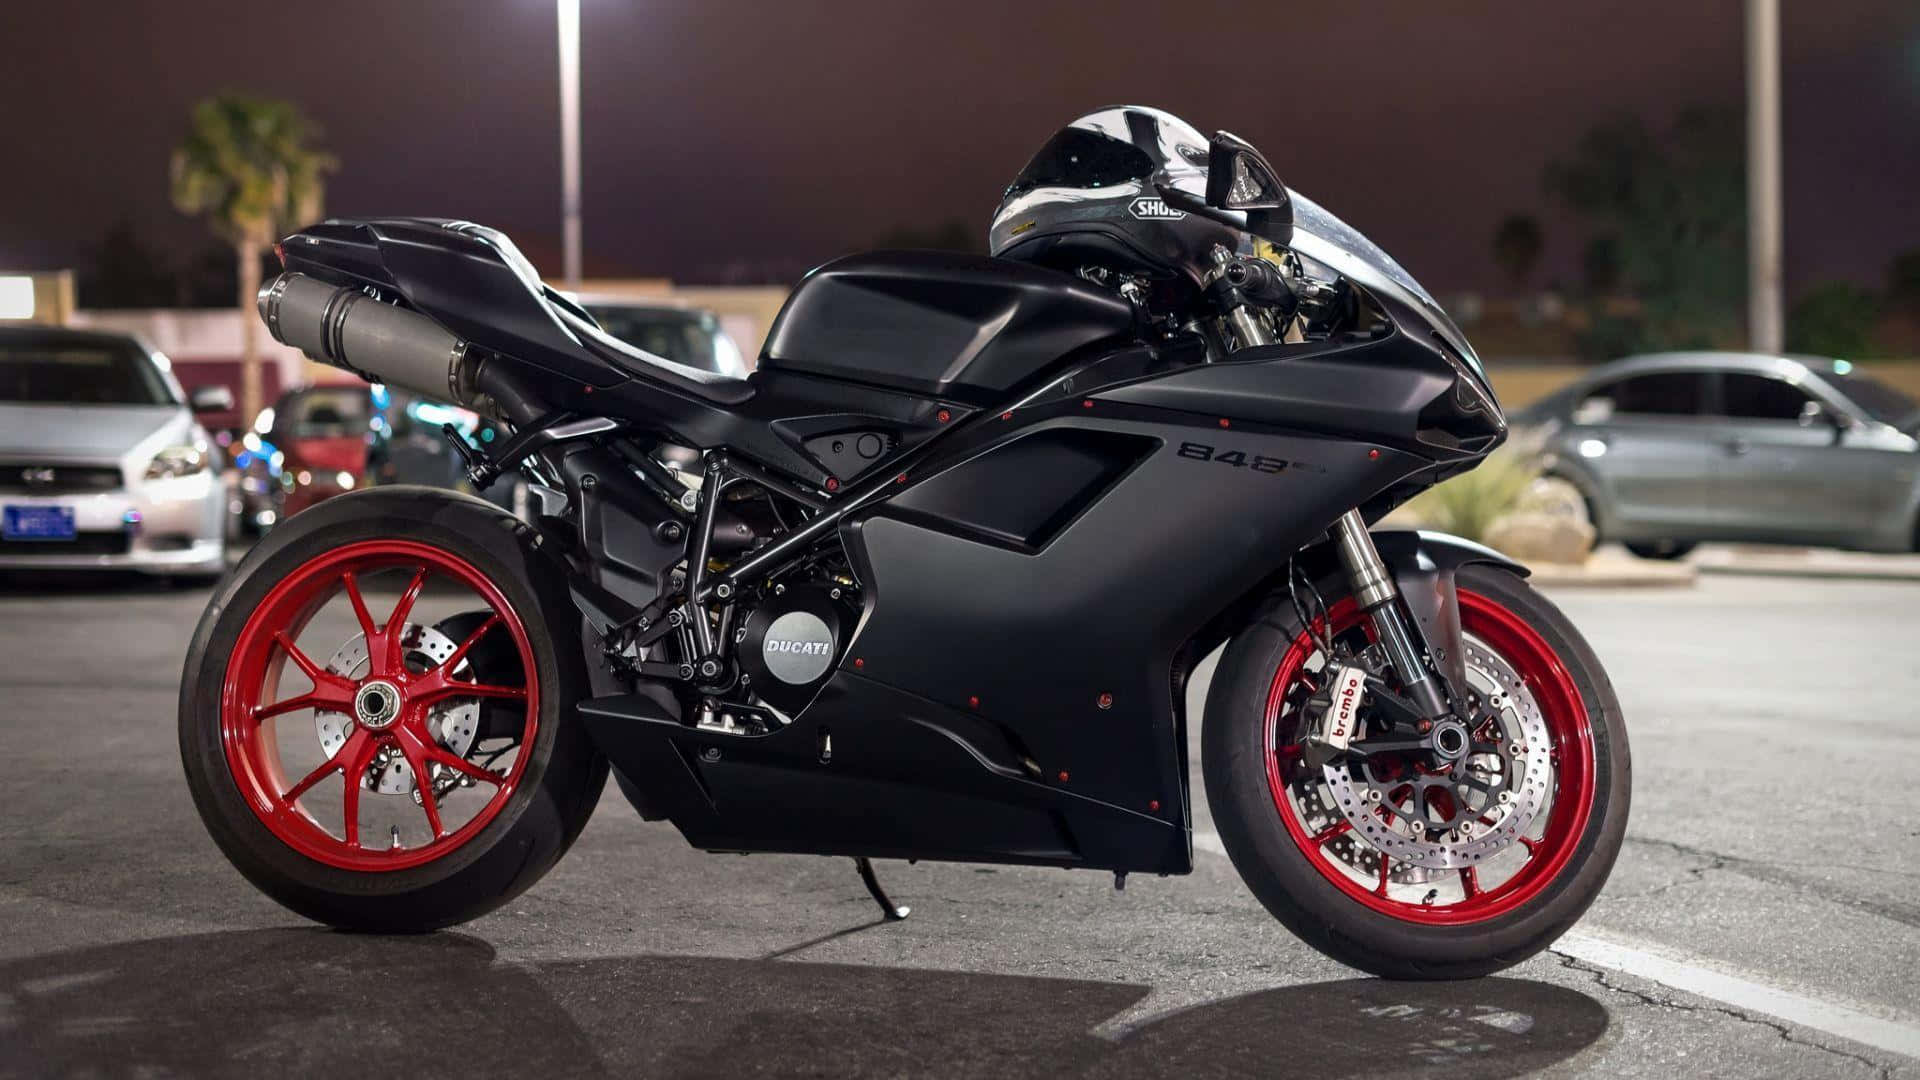 Appealing Ducati 848 Bike Background